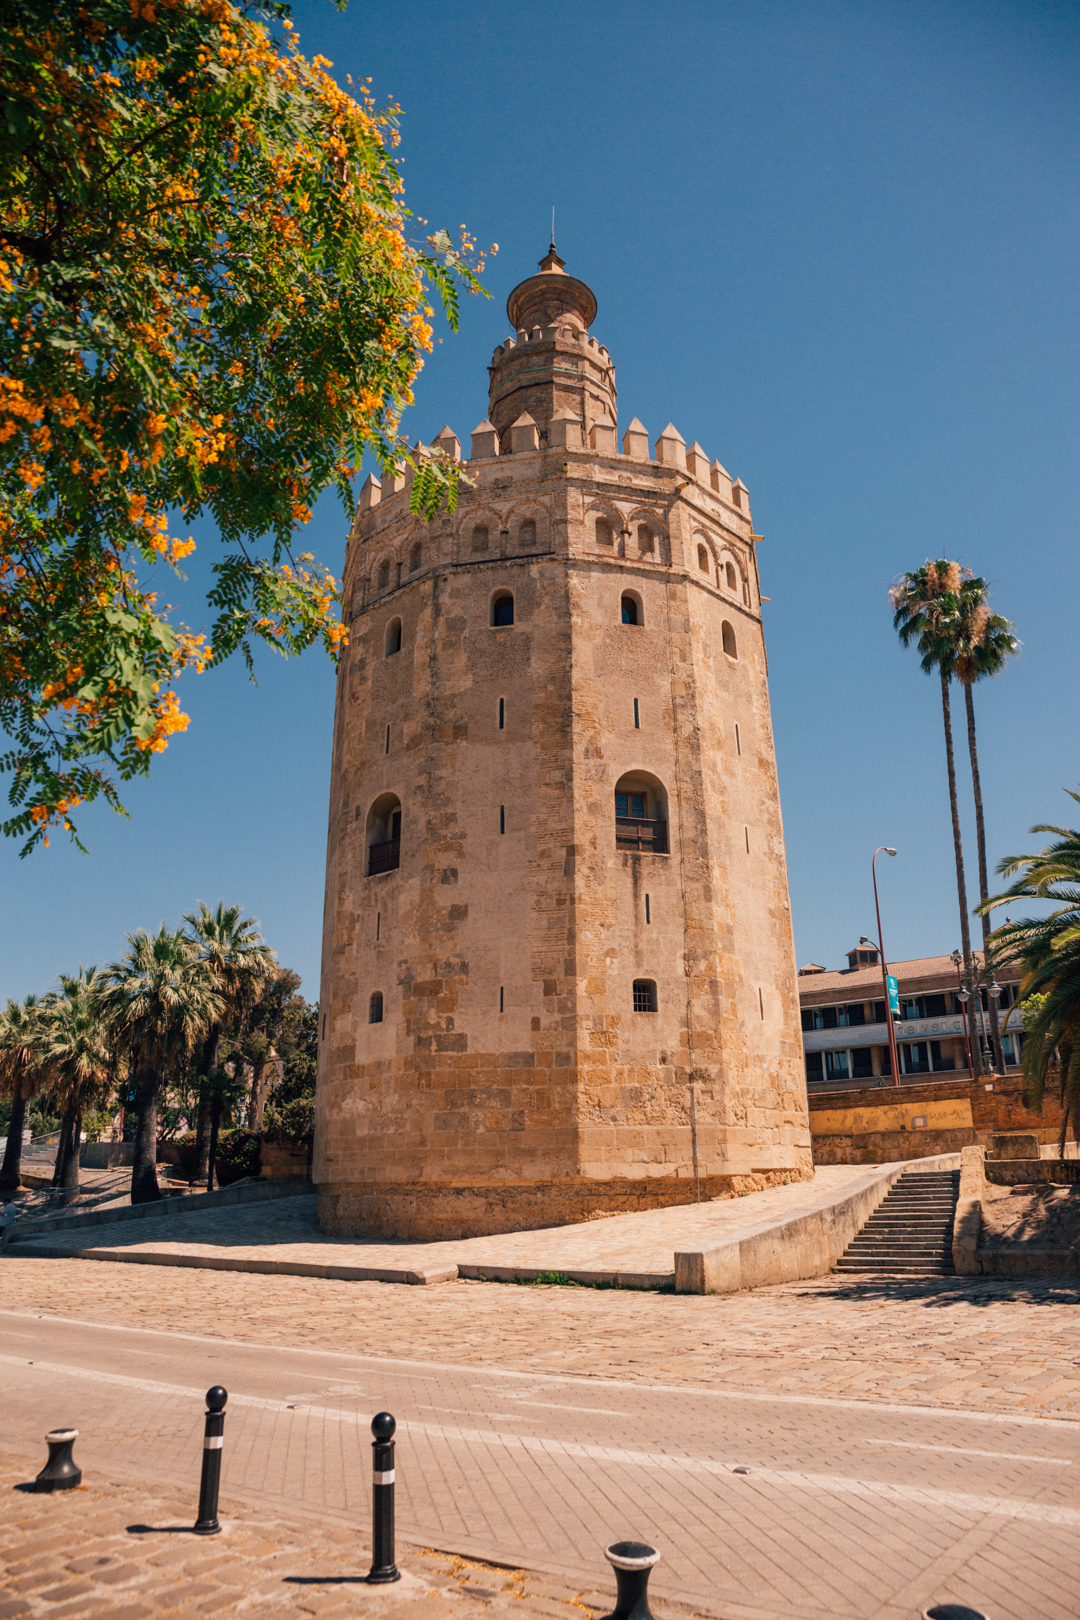 observation tower in seville, spain